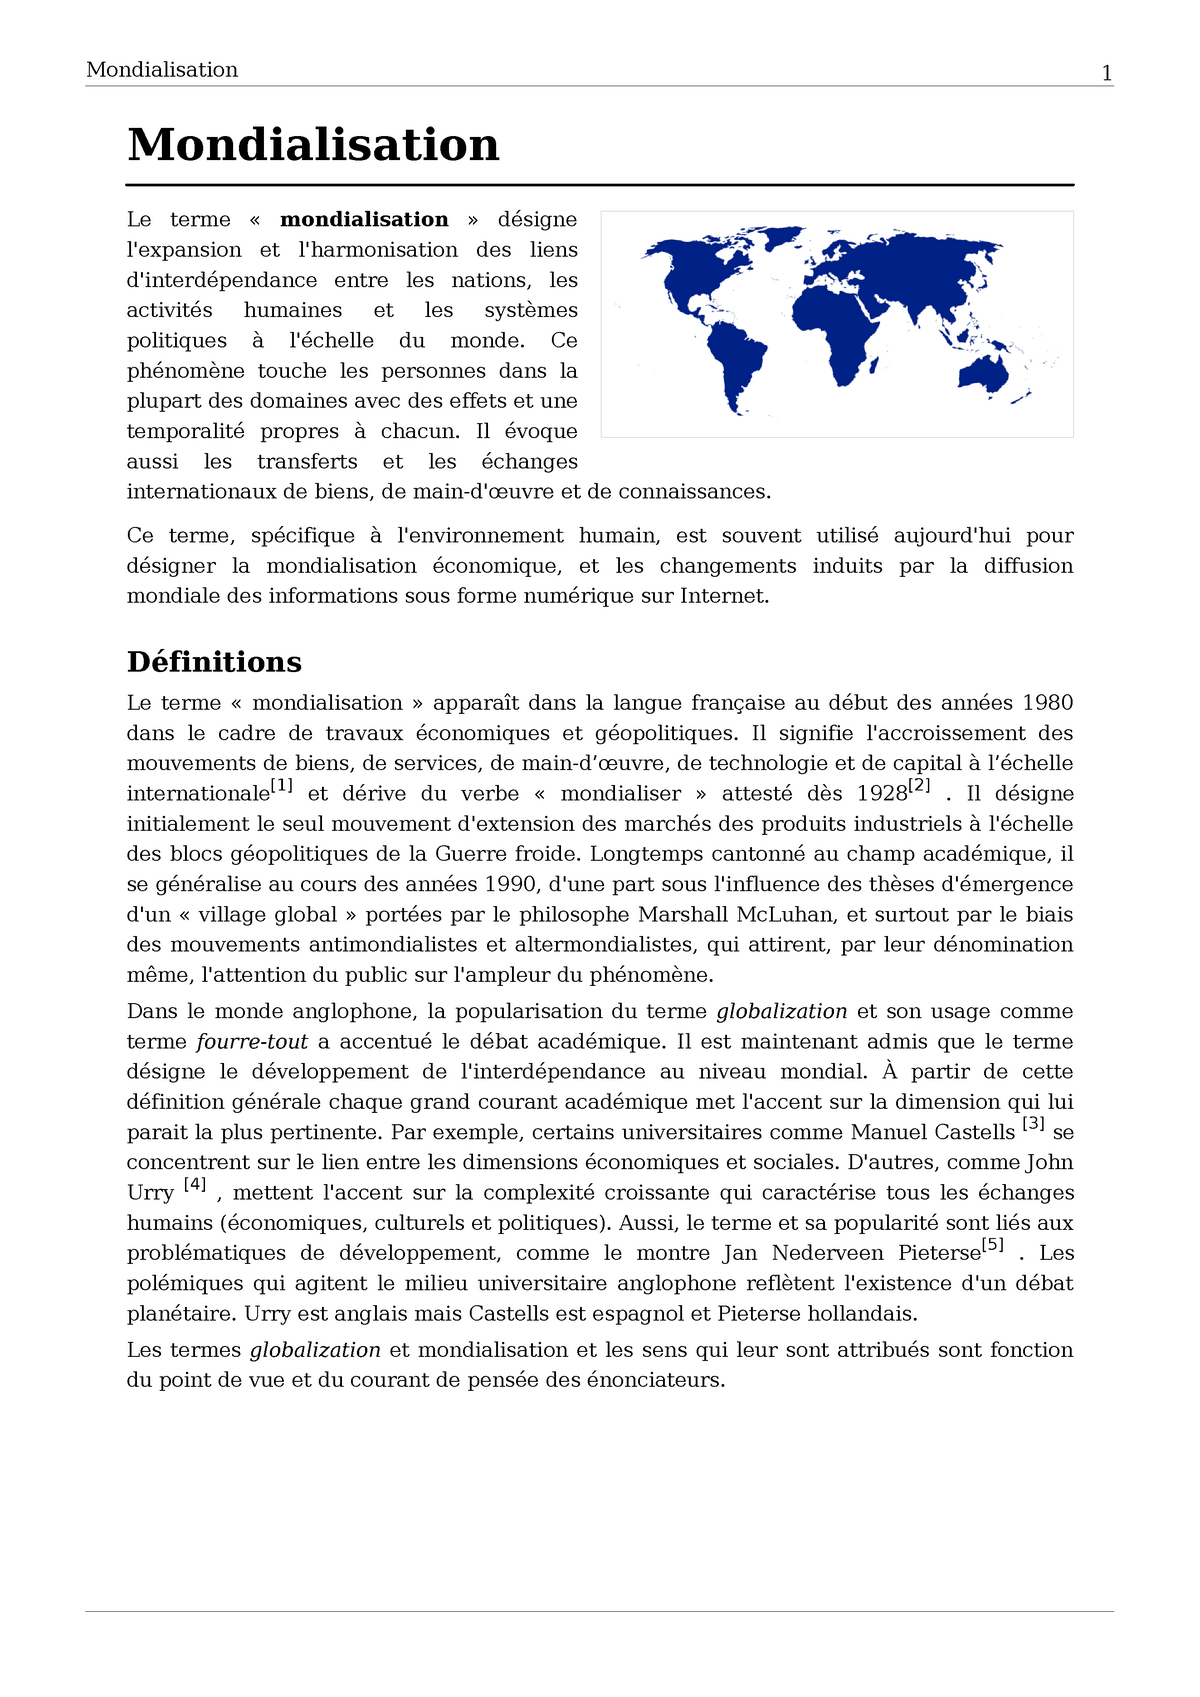 sujet de dissertation sur la mondialisation pdf